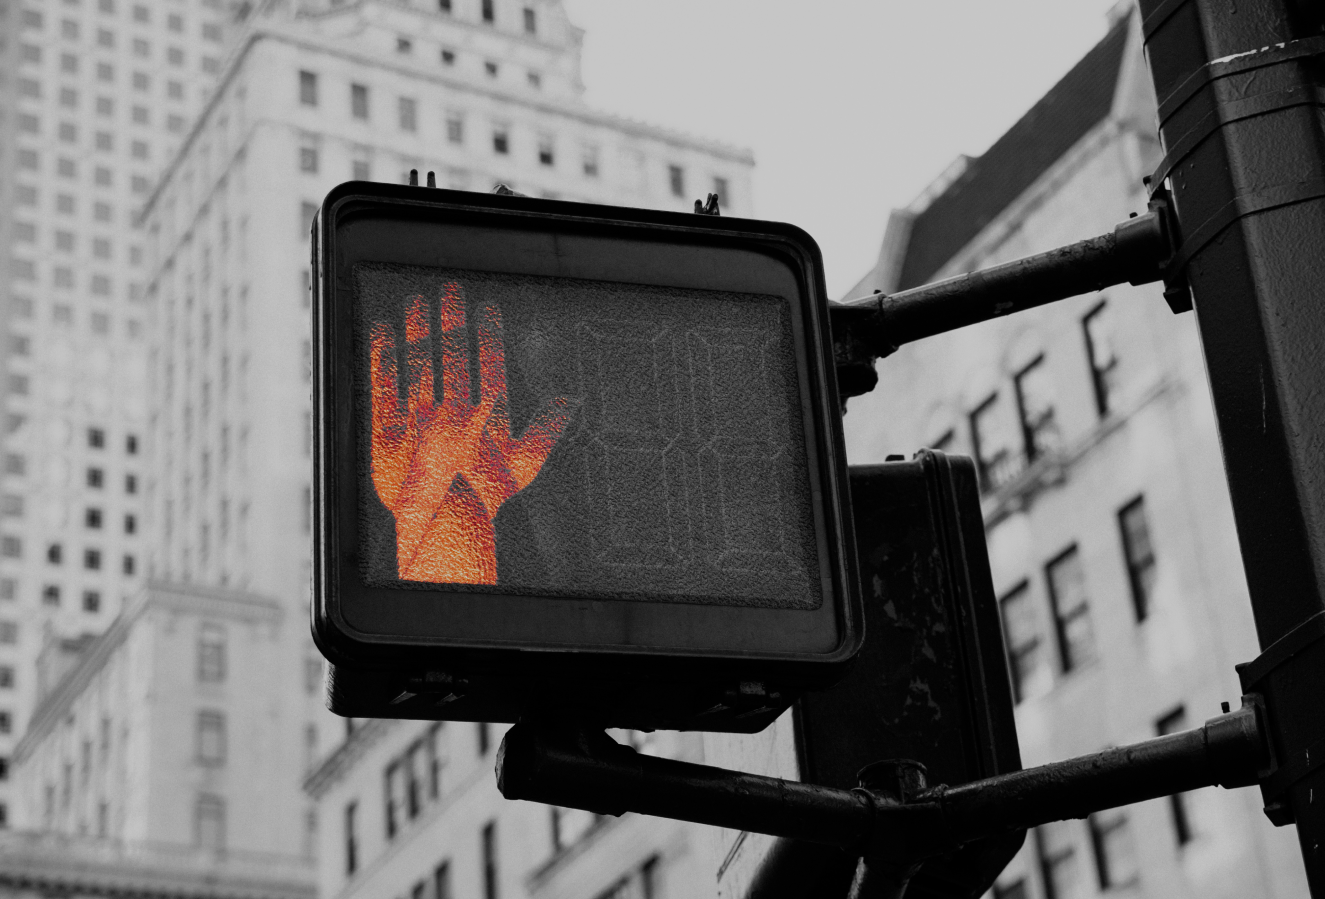 人行横道标志的图像，在黑白设置中显示突出显示的红手